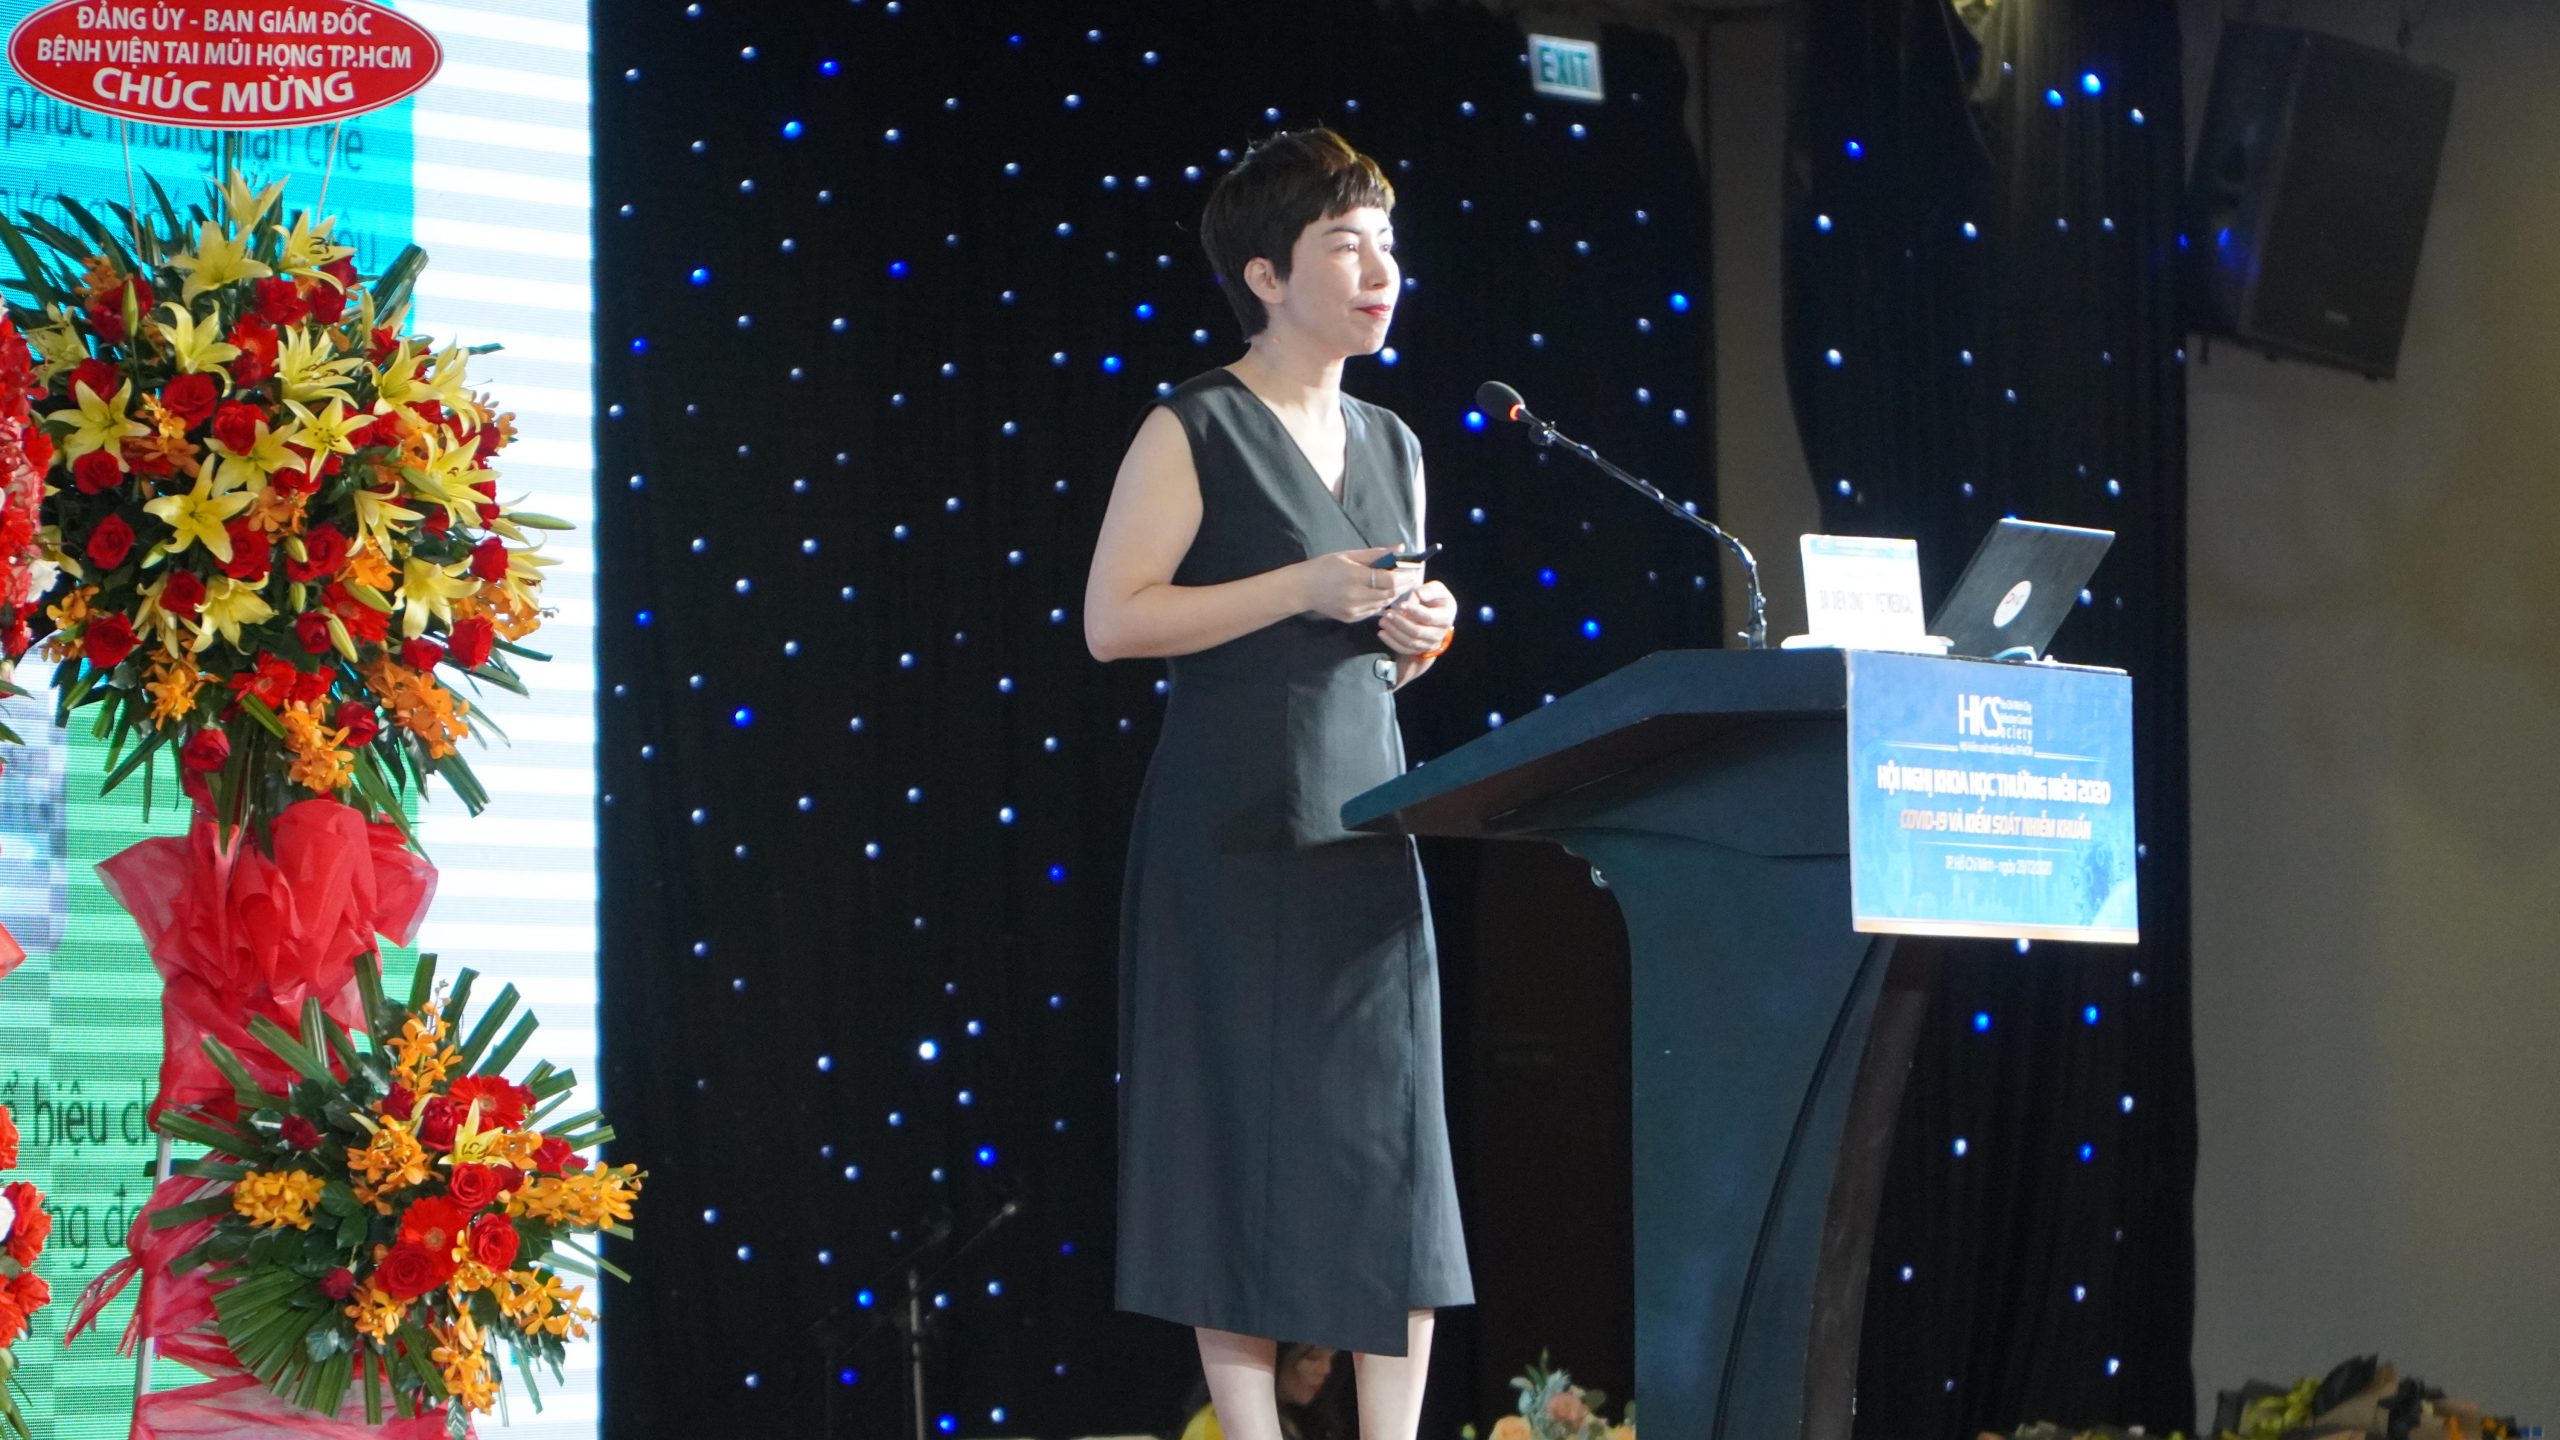 BS.Hoàng Oanh – Phó giám đốc ngành hàng KSNK Vietmedical trình bày báo cáo khoa học với nội dung “Ứng dụng các giải pháp tiên tiến trong Kiểm soát nhiễm khuẩn”